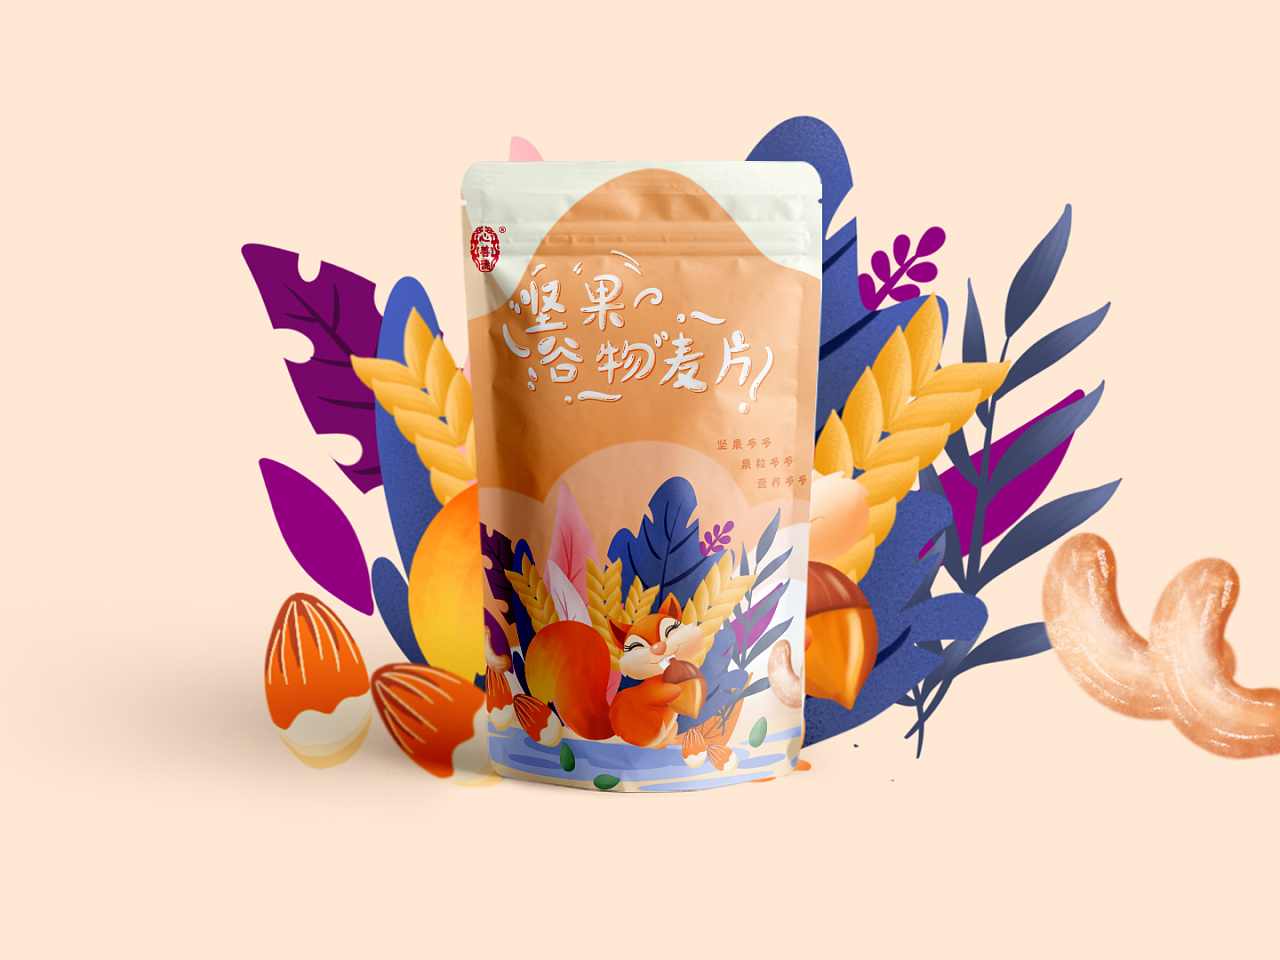 酸奶谷物/坚果谷物插画包装设计